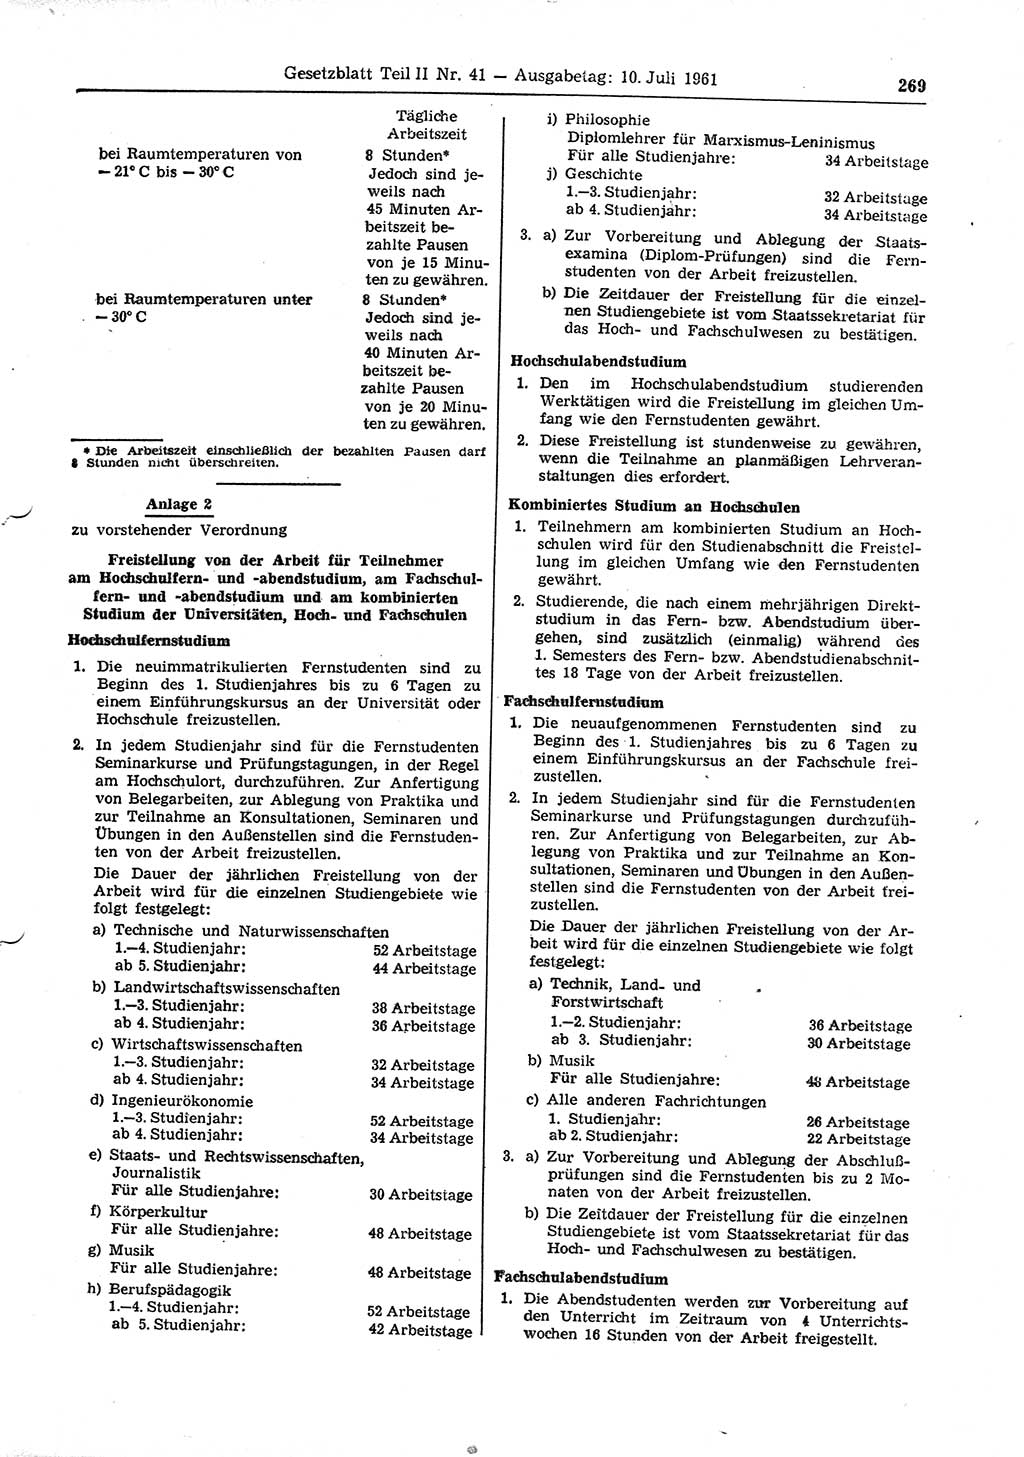 Gesetzblatt (GBl.) der Deutschen Demokratischen Republik (DDR) Teil ⅠⅠ 1961, Seite 269 (GBl. DDR ⅠⅠ 1961, S. 269)